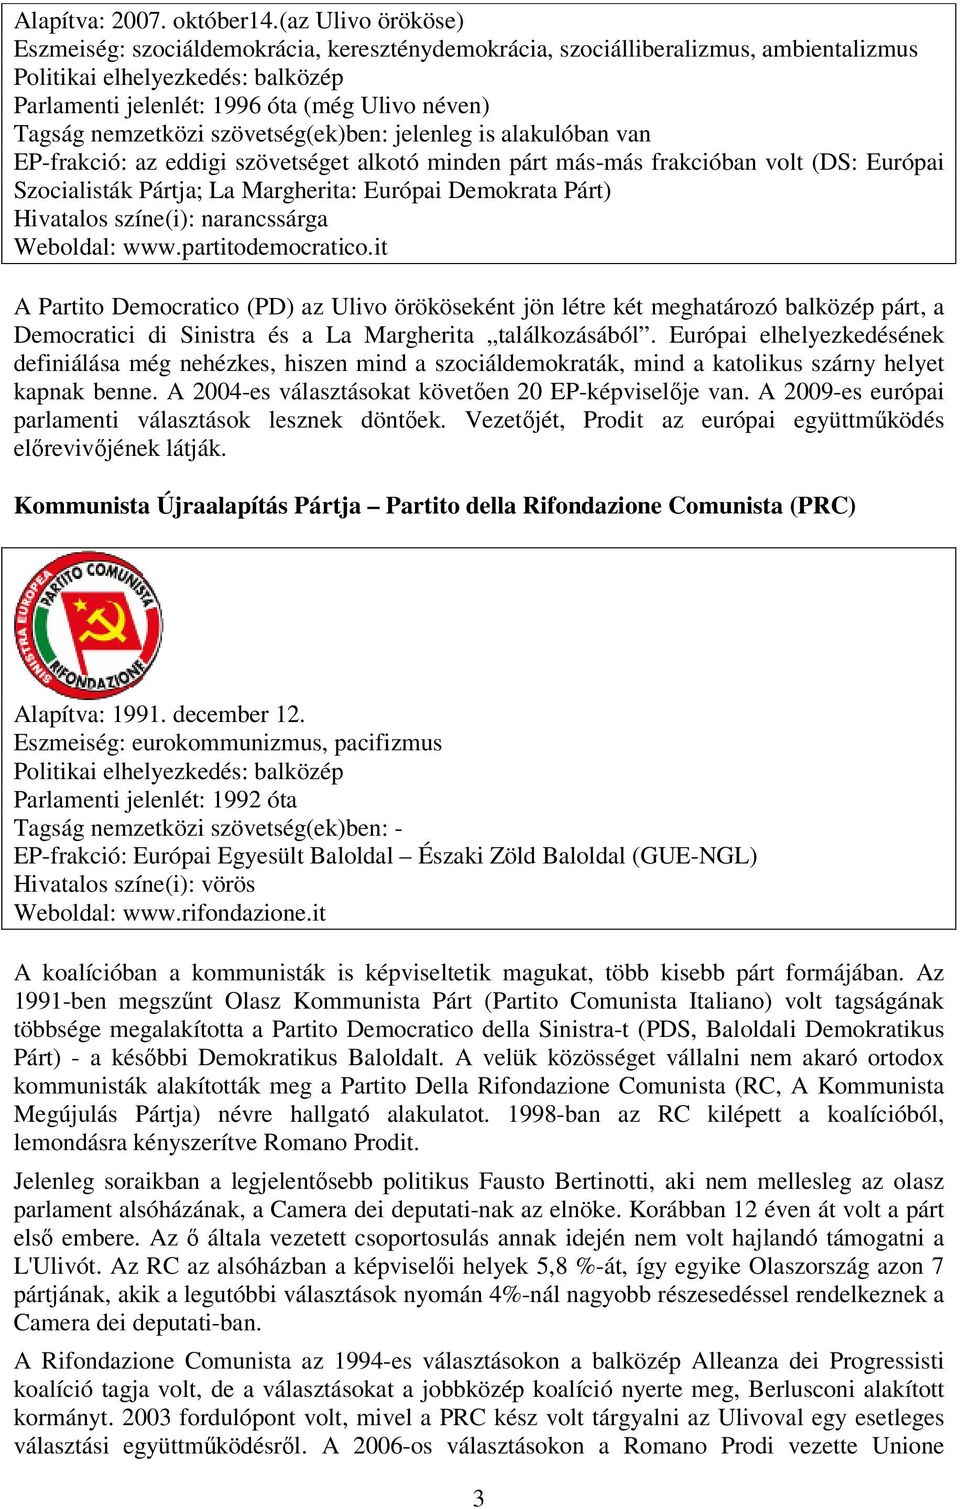 eddigi szövetséget alkotó minden párt más-más frakcióban volt (DS: Európai Szocialisták Pártja; La Margherita: Európai Demokrata Párt) narancssárga Weboldal: www.partitodemocratico.